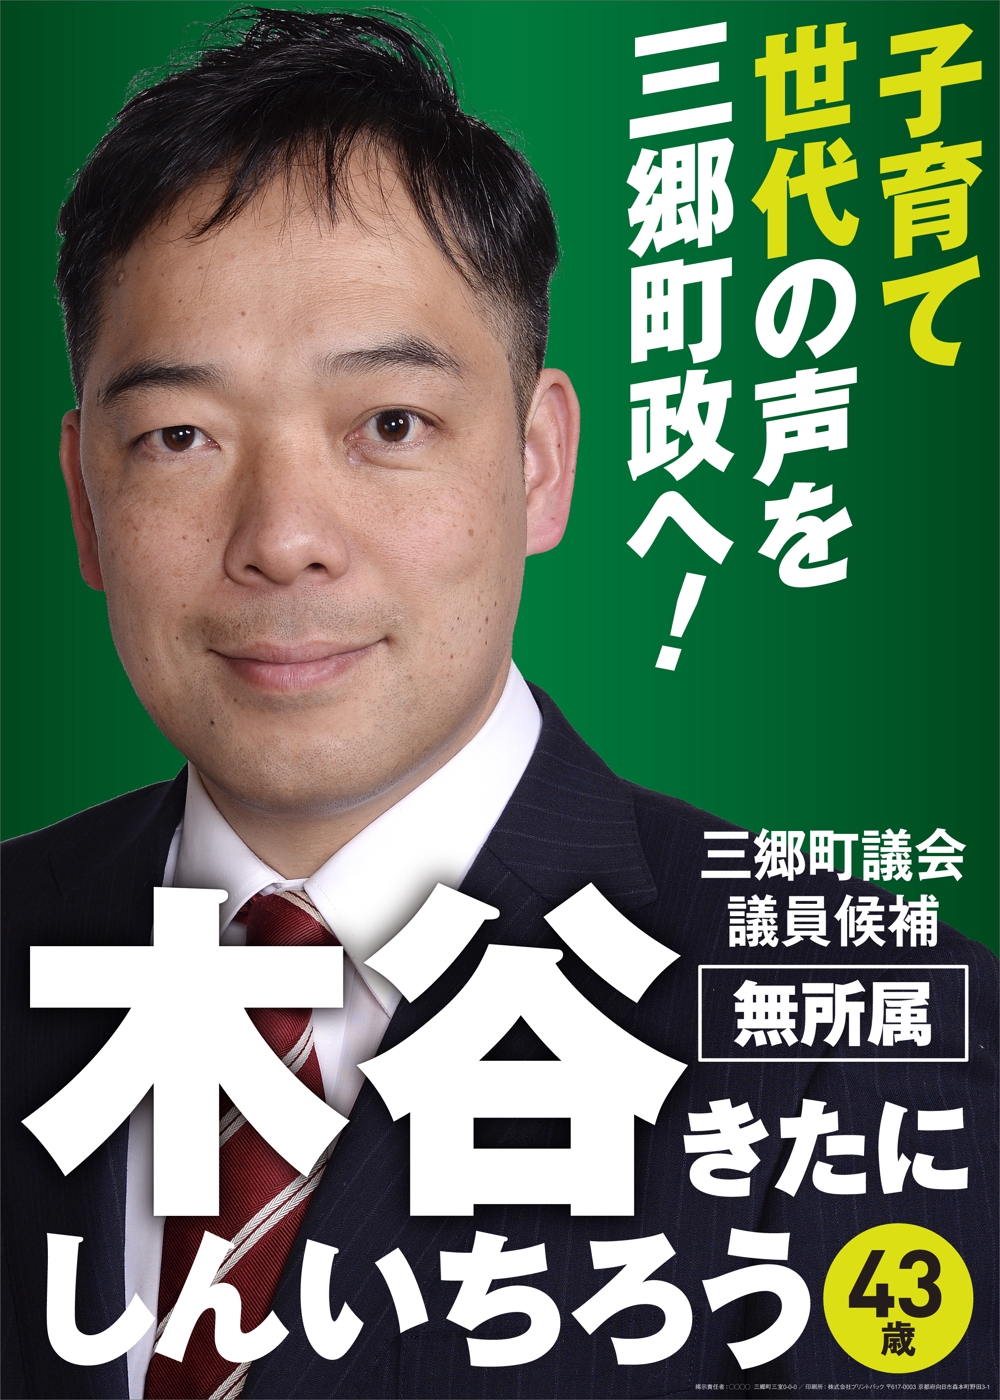 town_councilor_election_poster_a.jpg